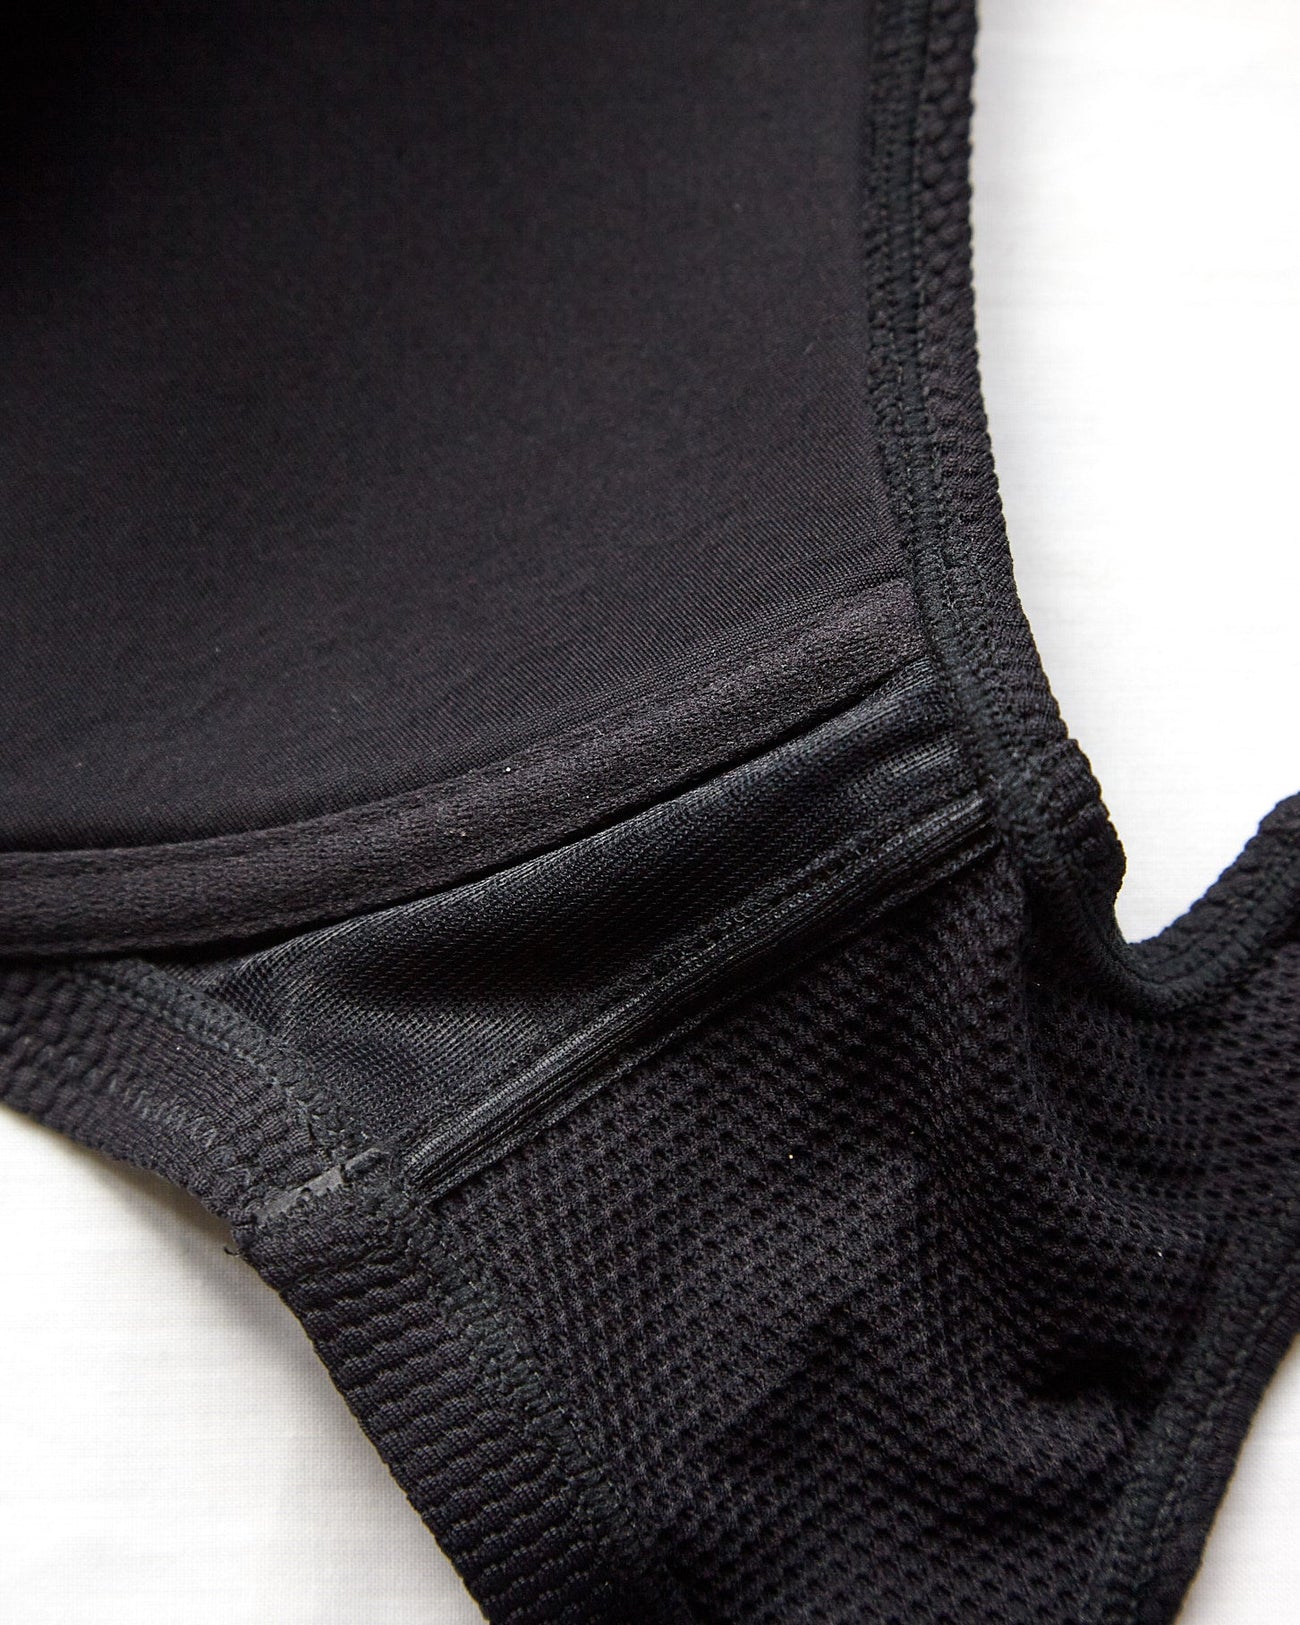 Beija Spanish Textured Swimwear Fabric Wired Large Cups Get Wet Z Crop ...